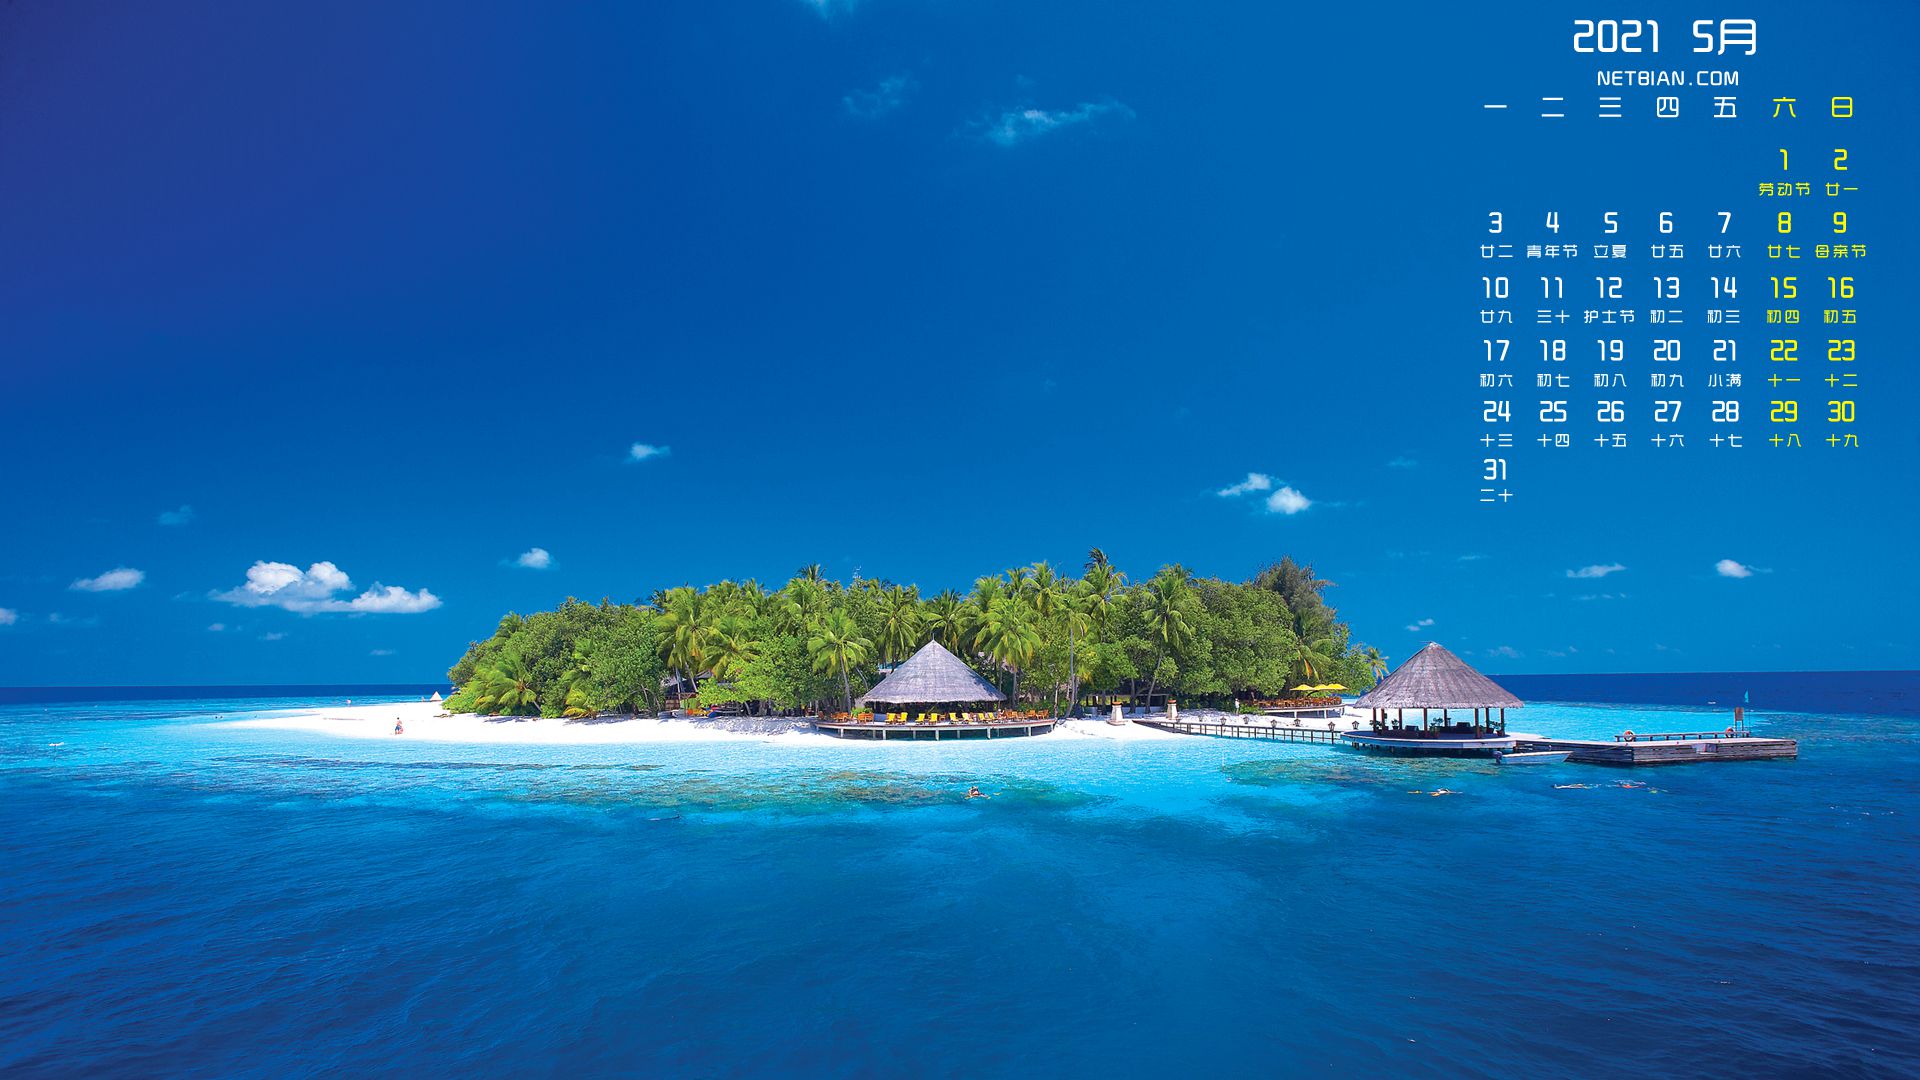 蔚蓝大海，海岛，椰树林，小屋，2021年5月岛屿风景旅游日历壁纸图片